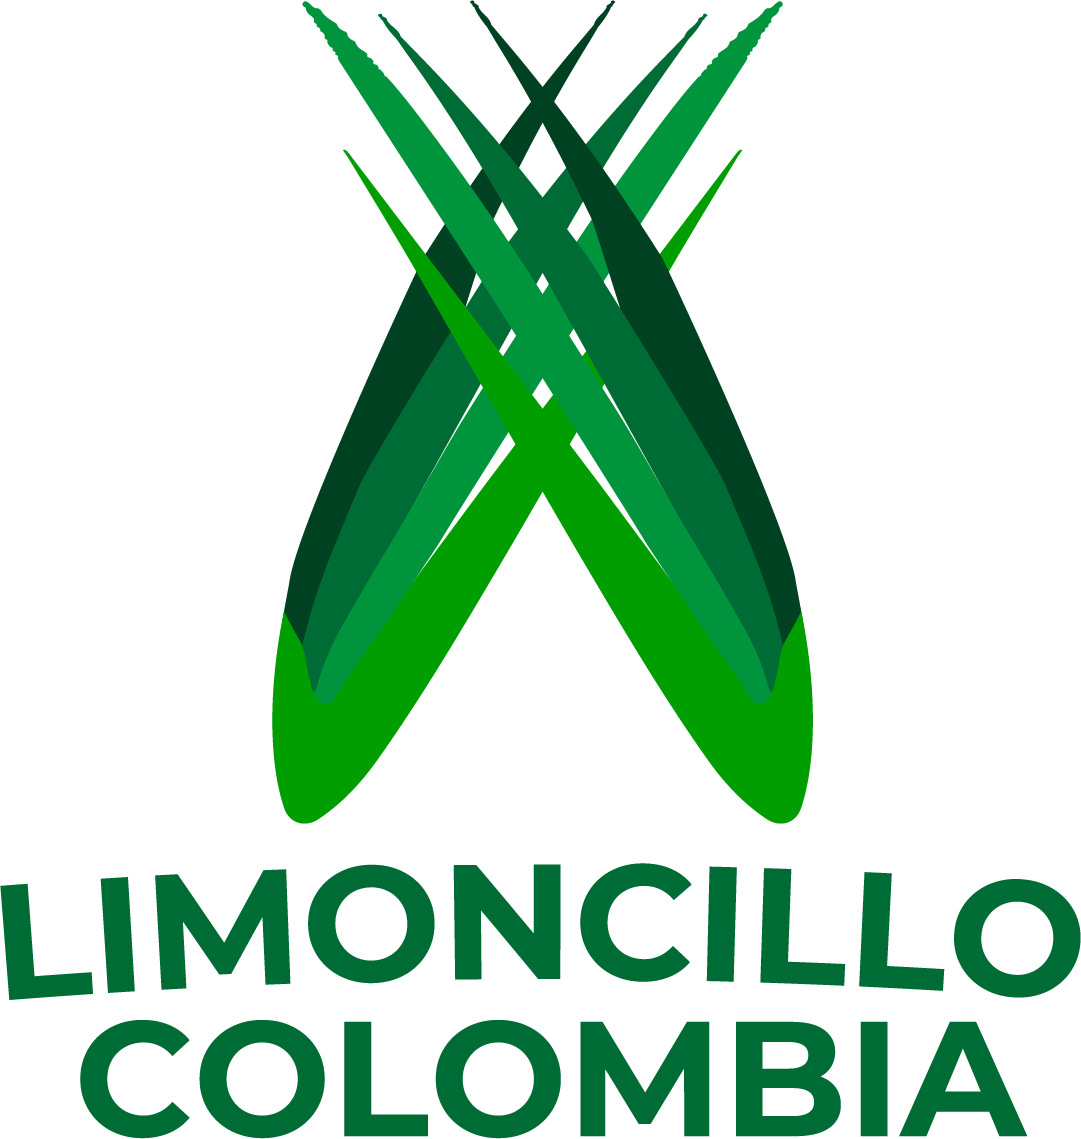 LIMONCILLO COLOMBIA